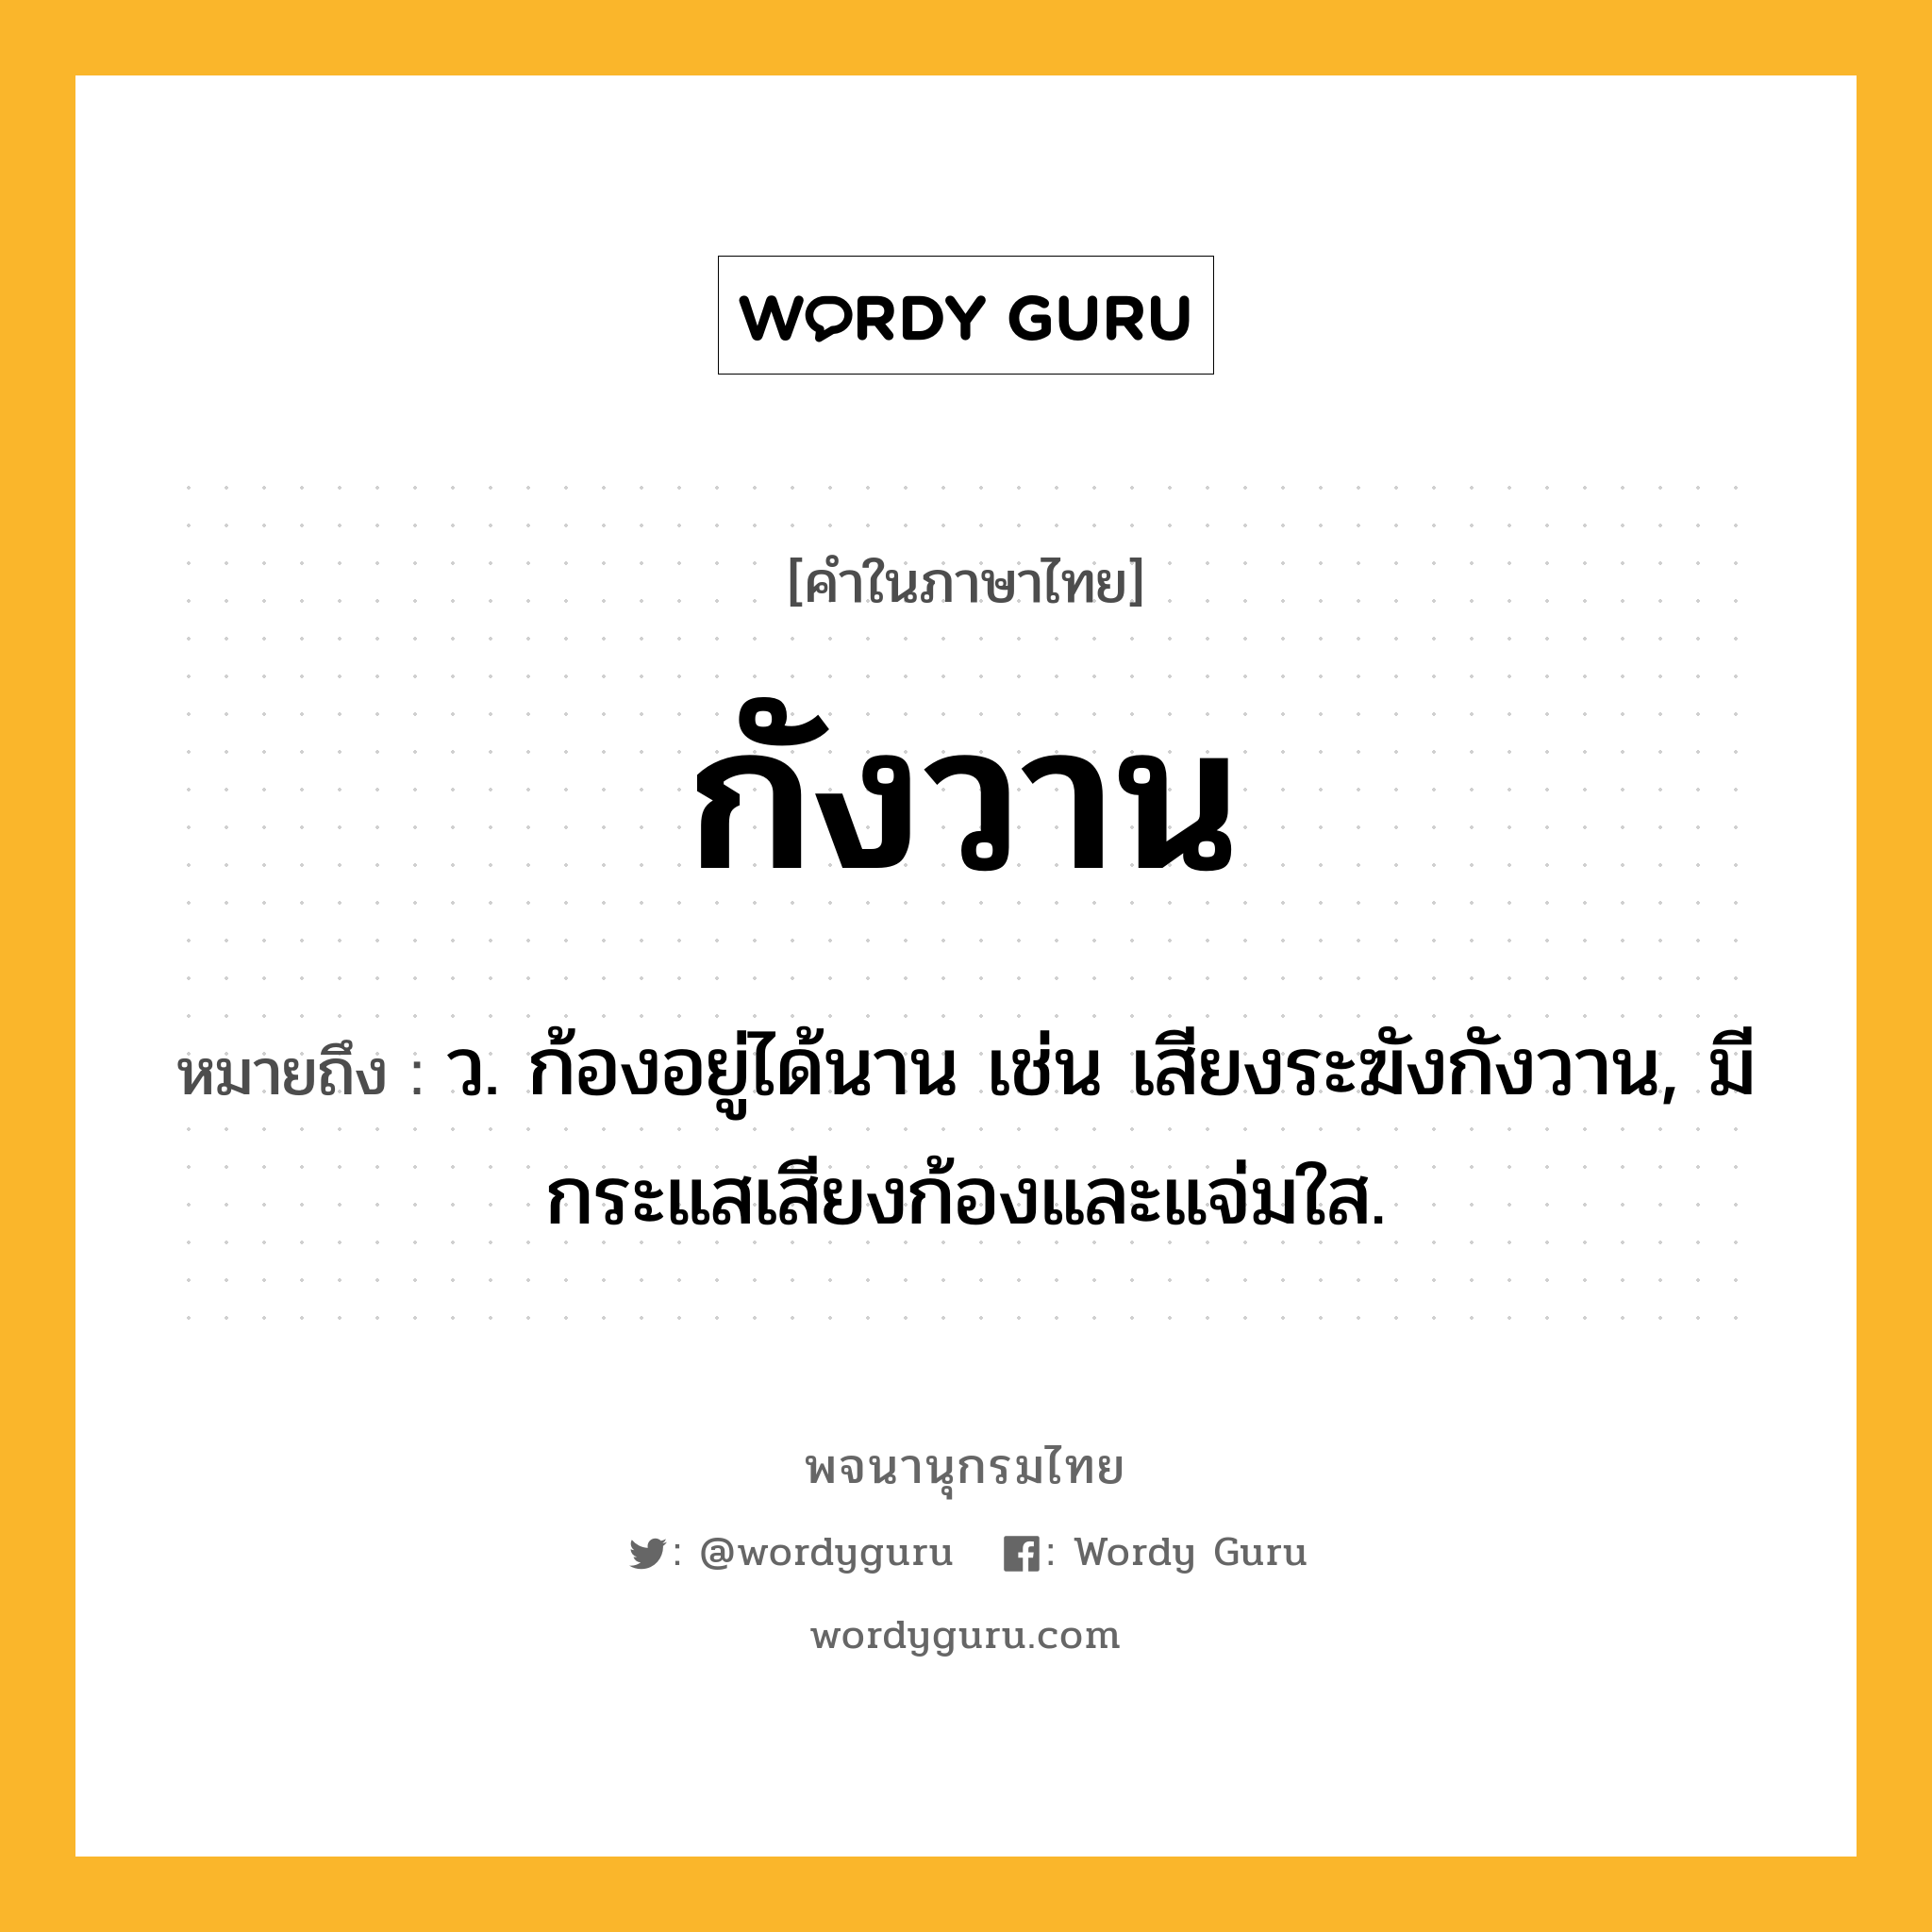 กังวาน ความหมาย หมายถึงอะไร?, คำในภาษาไทย กังวาน หมายถึง ว. ก้องอยู่ได้นาน เช่น เสียงระฆังกังวาน, มีกระแสเสียงก้องและแจ่มใส.